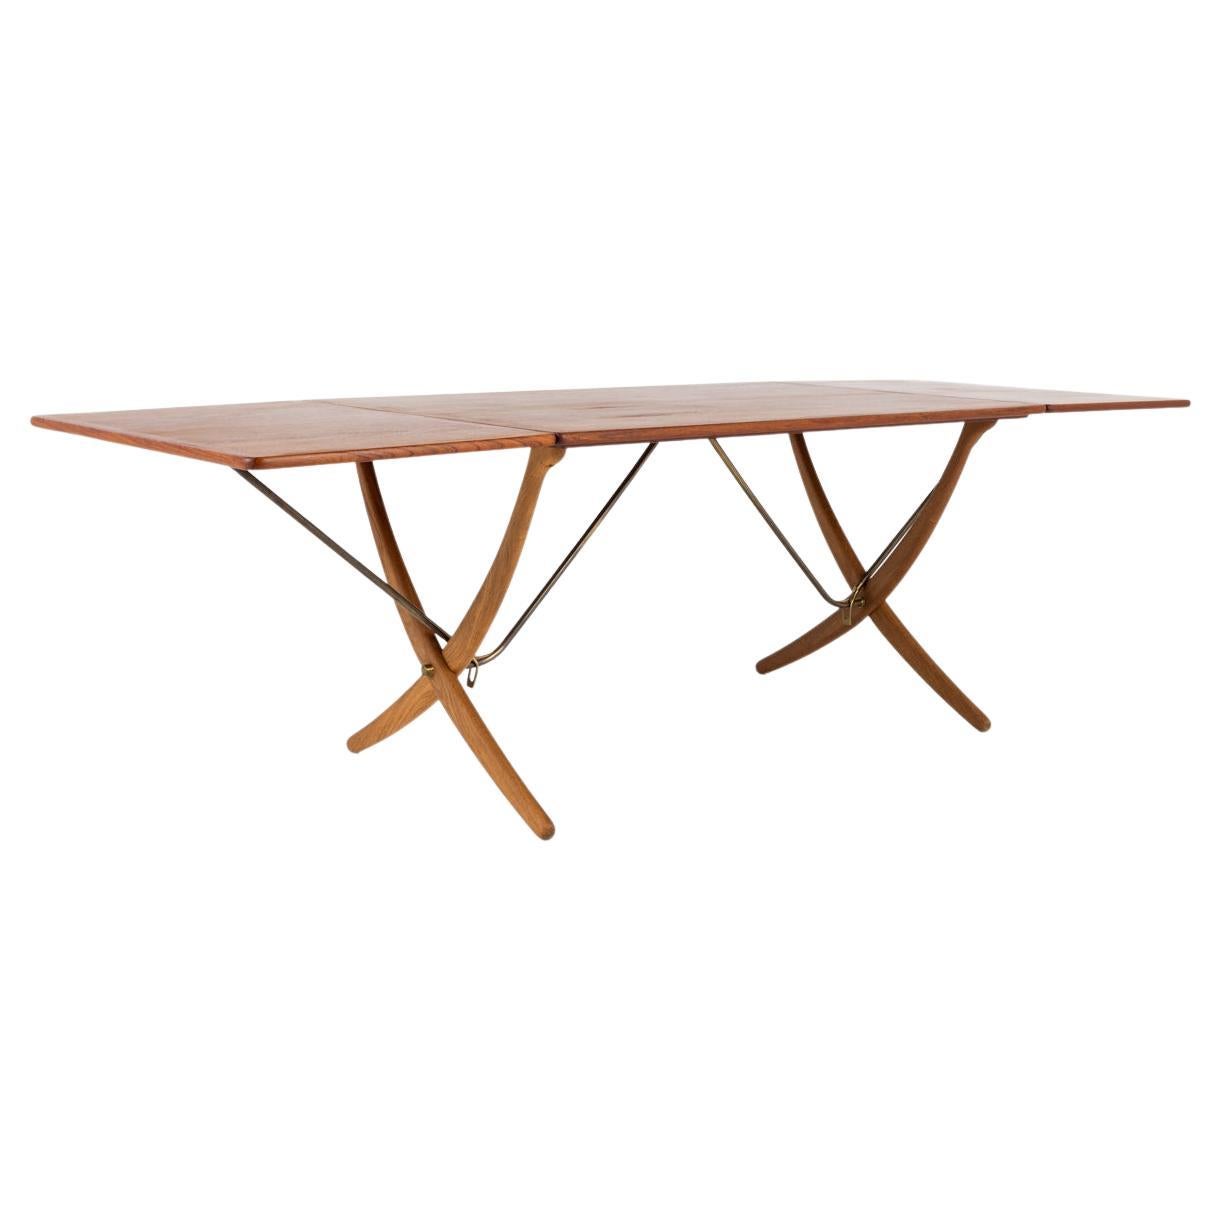 AT 304 - Sabre-legged table by Hans J. Wegner